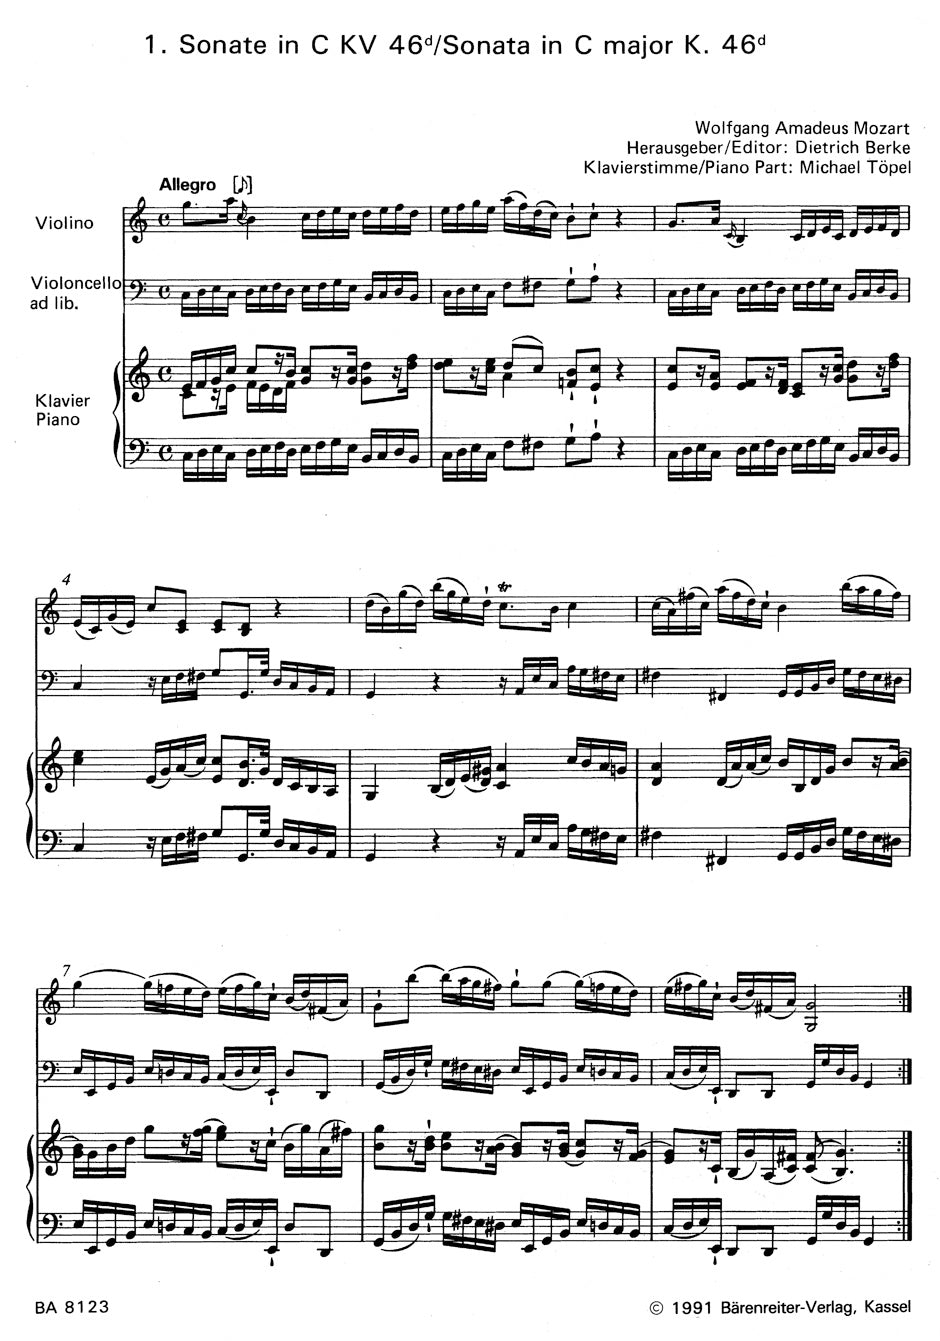 Mozart Zwei Sonaten KV 46d,e -Bearbeitung der Duos für Violine und Violoncello. Klavierstimme vom Herausgeber-